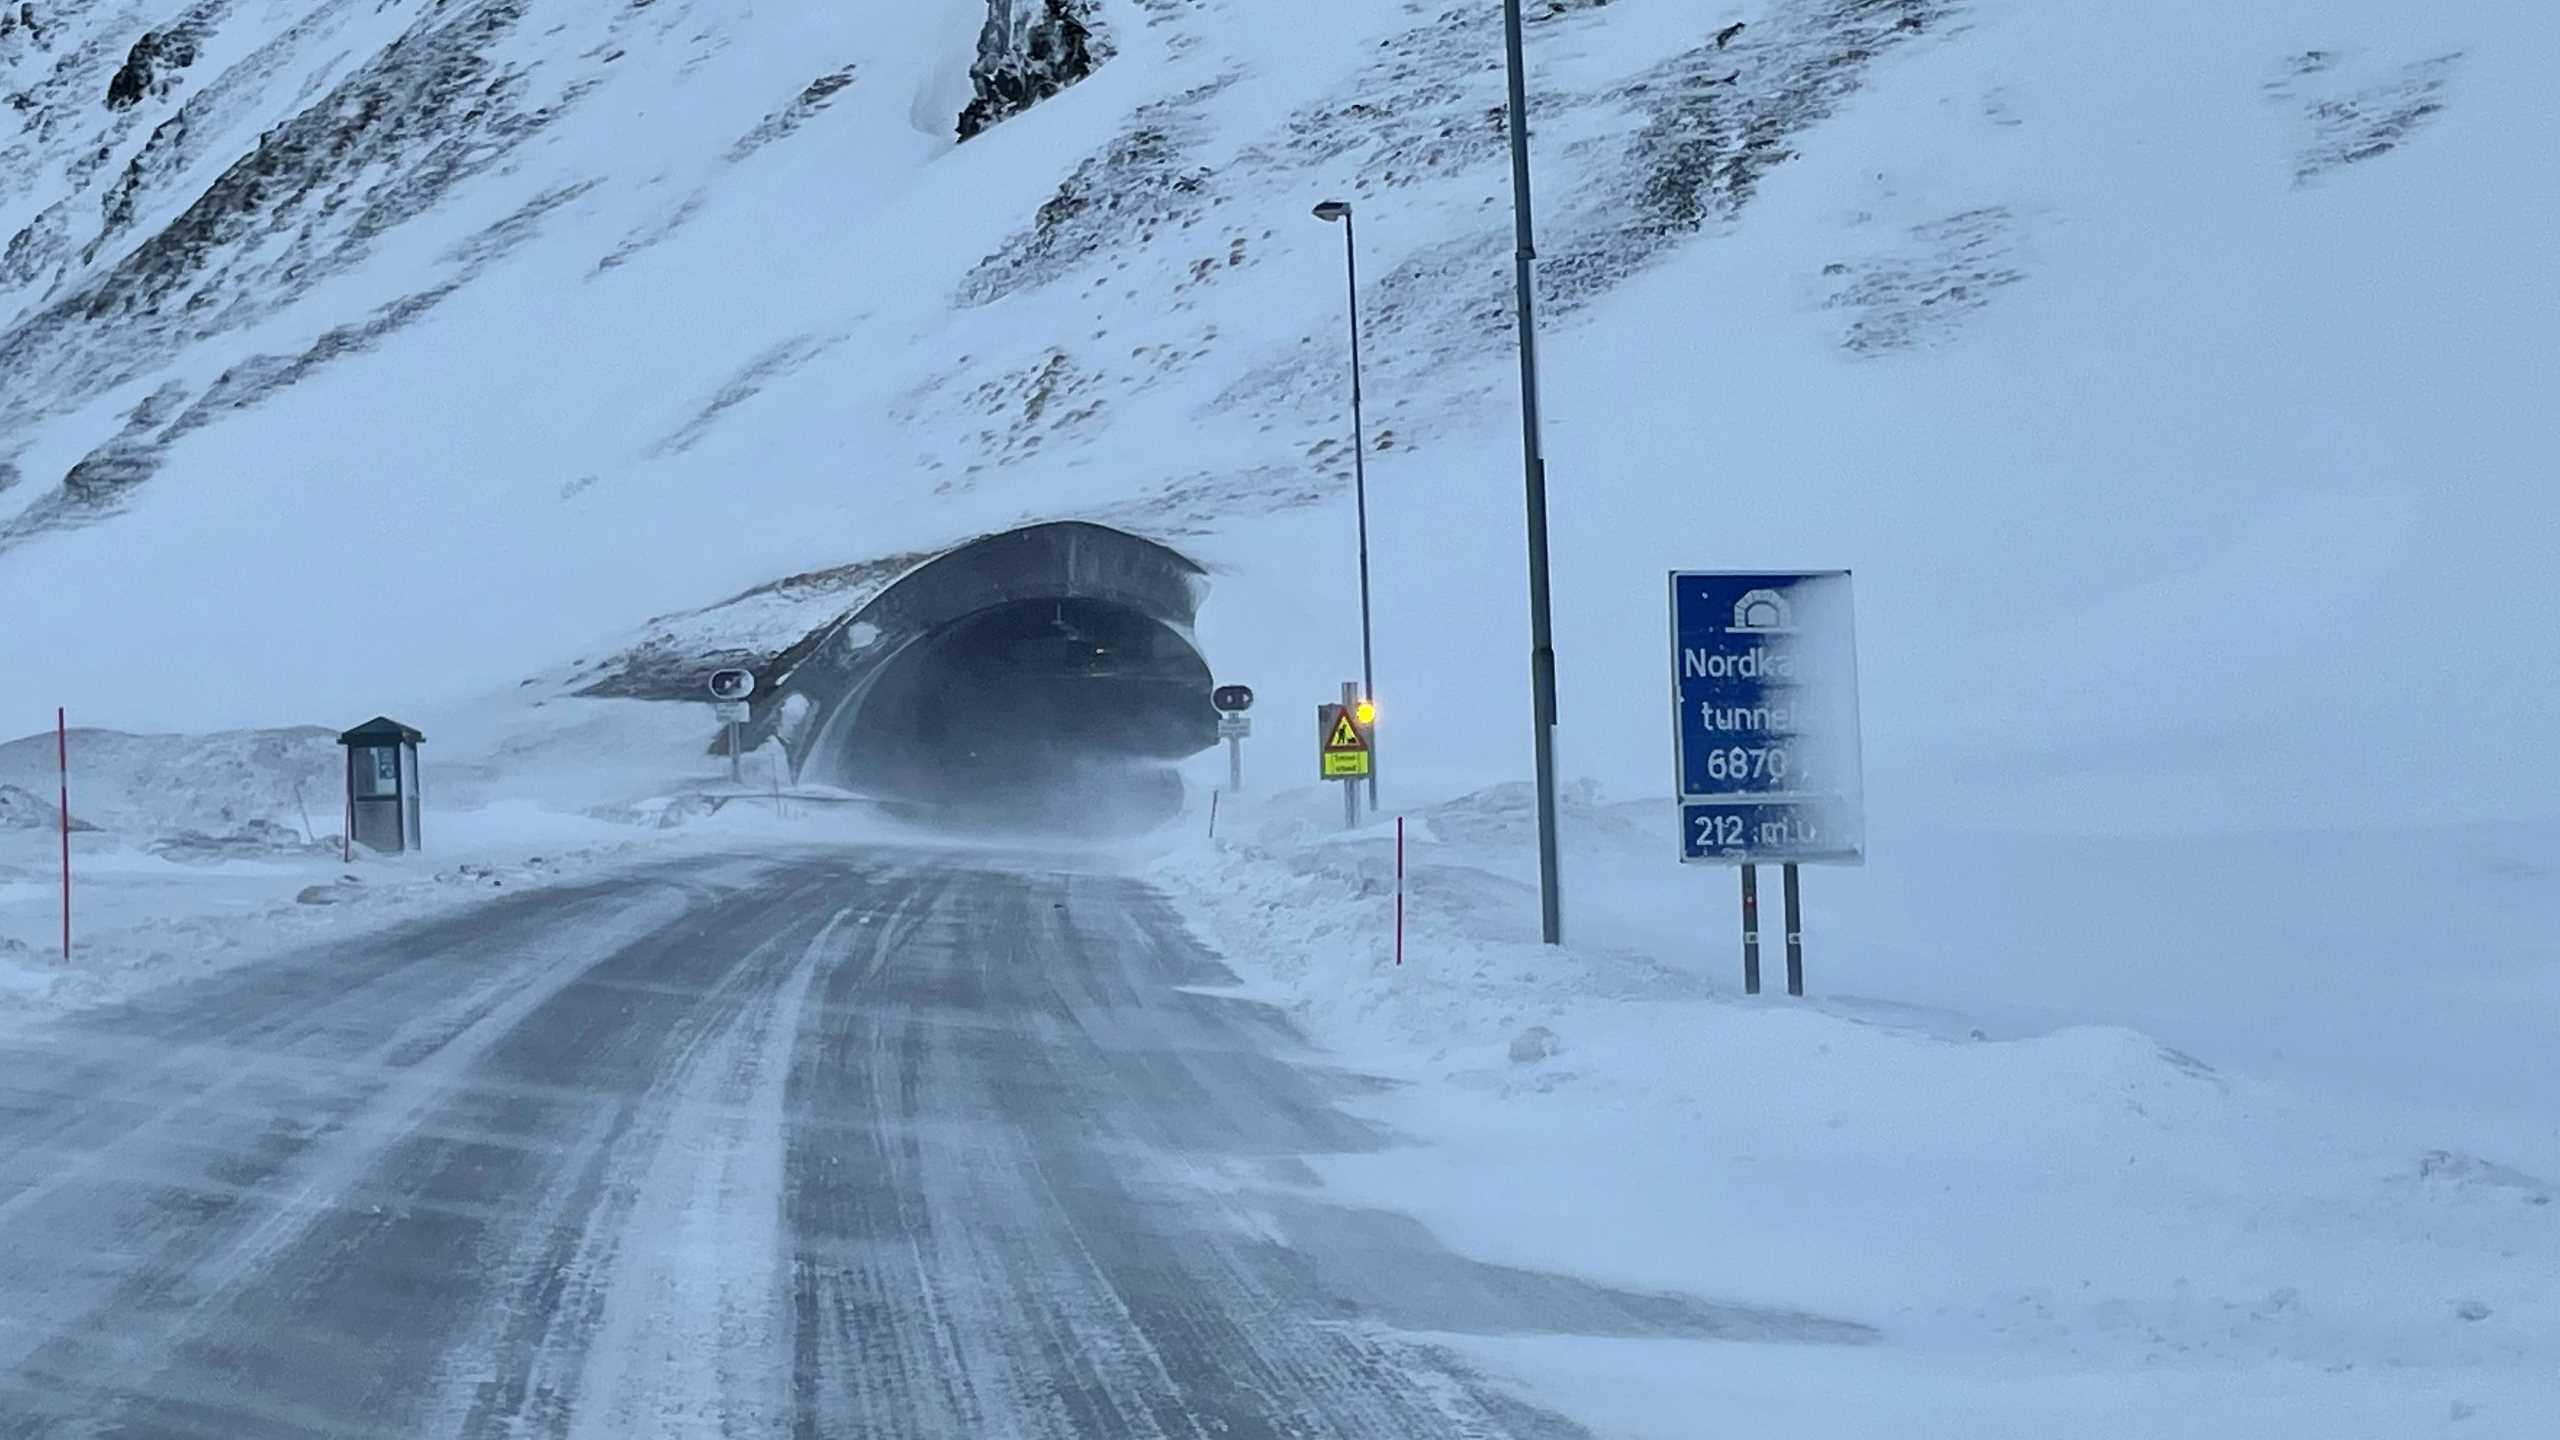 Nördliche Einfahrt in den Nordkap Tunnel